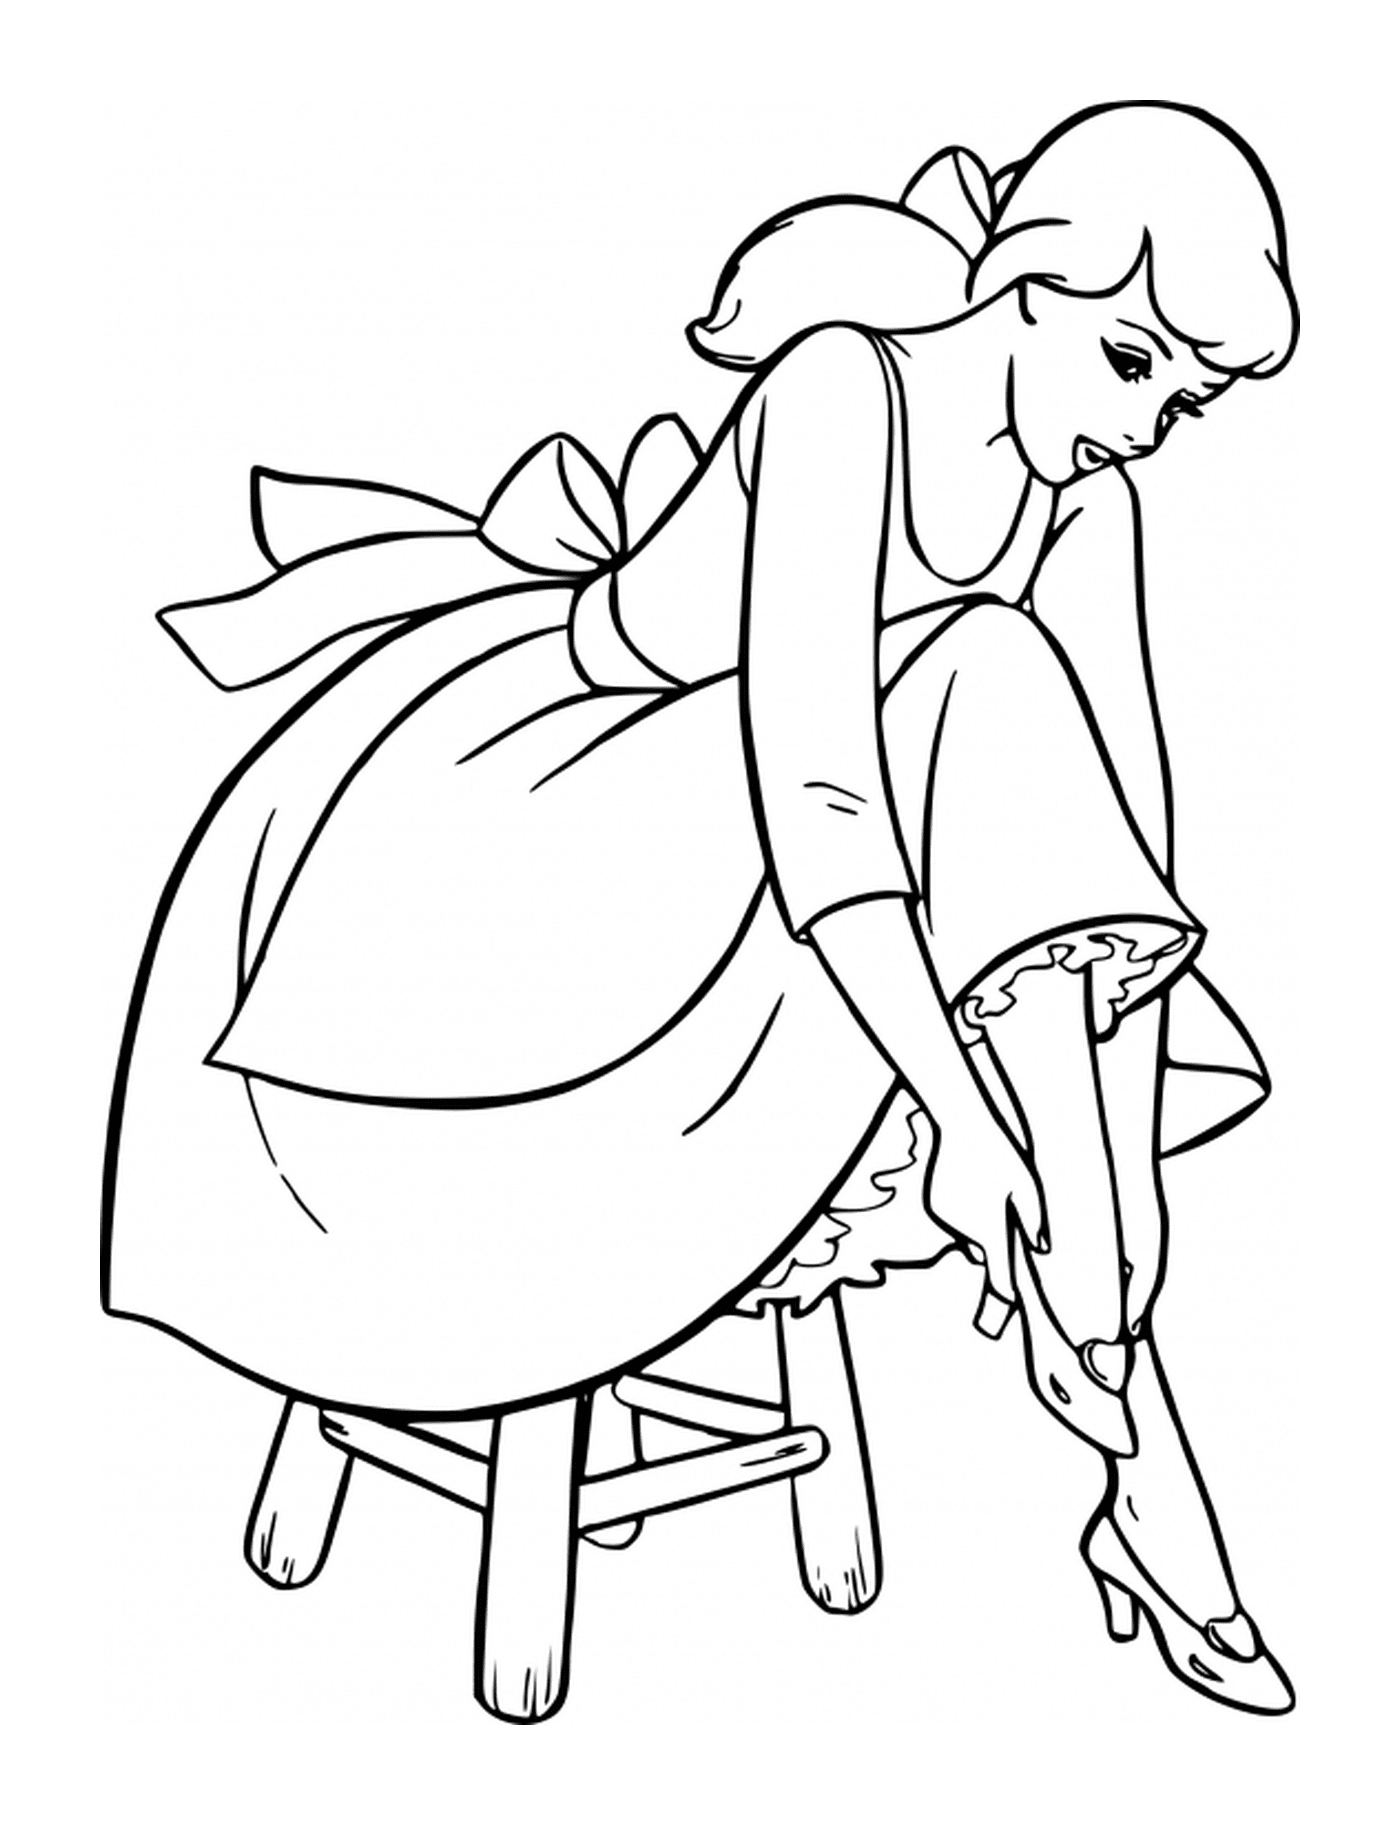  Cinderela colocando seu sapato em um banquinho 